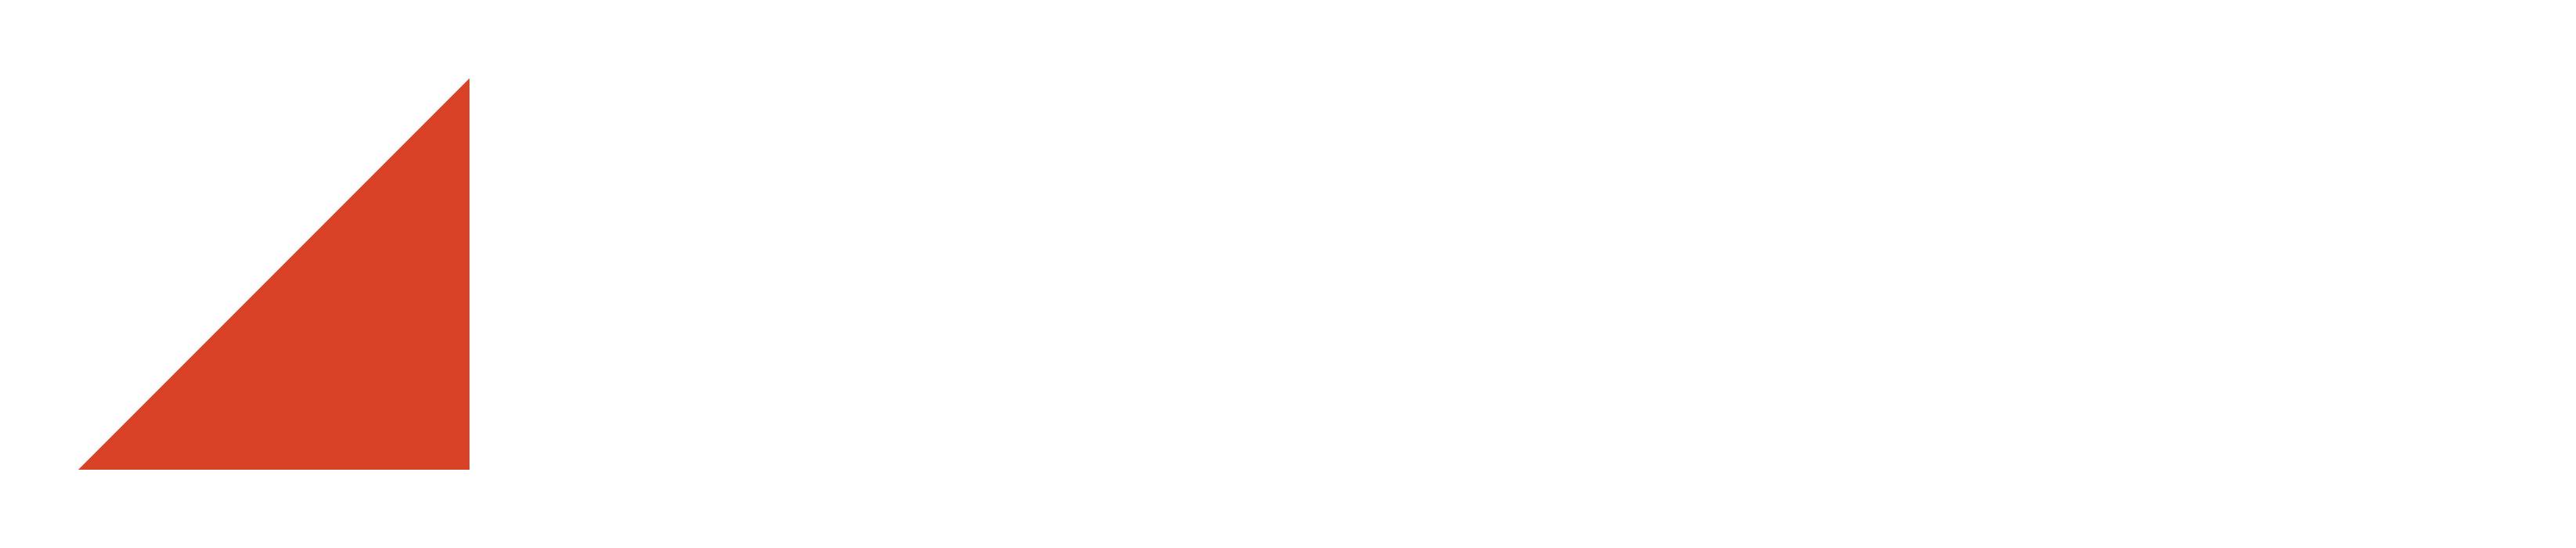 Makeva Oy